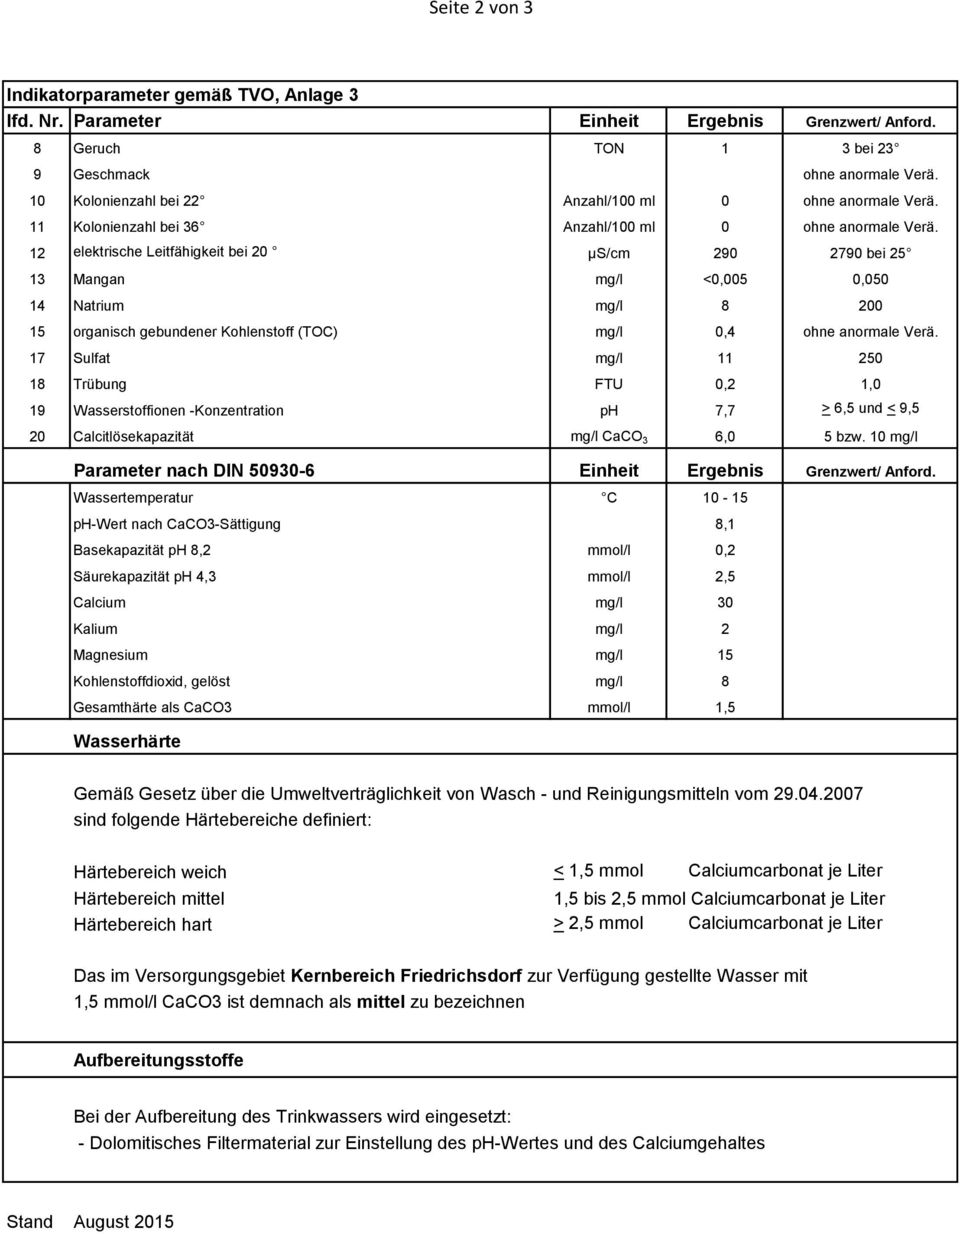 17 Sulfat mg/l 11 250 18 Trübung FTU 0,2 1,0 19 Wasserstoffionen -Konzentration ph 7,7 > 6,5 und < 9,5 20 Calcitlösekapazität mg/l CaCO 3 6,0 5 bzw.